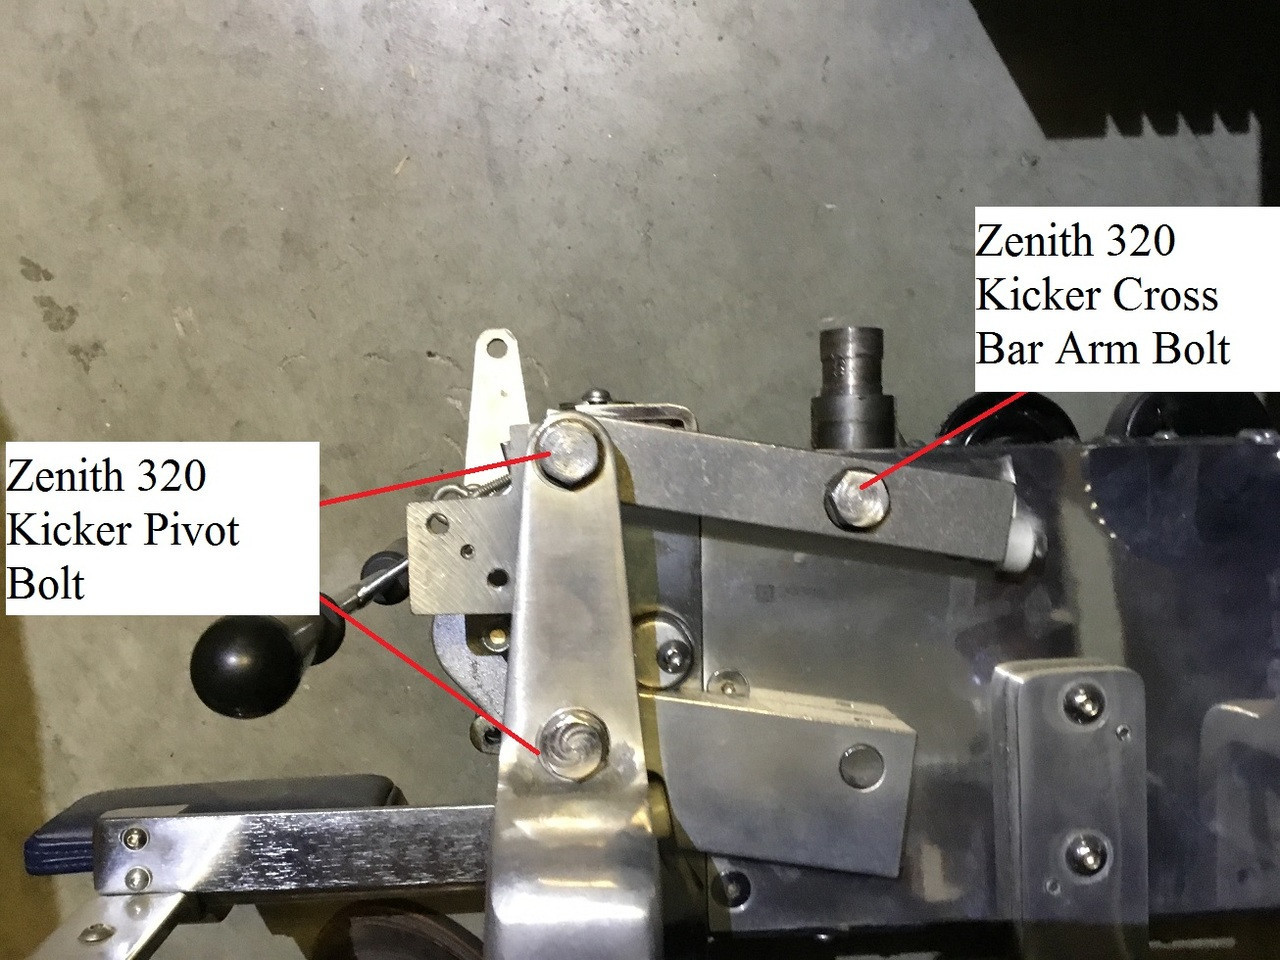 Zenith 320 Kicker Pivot Bolt